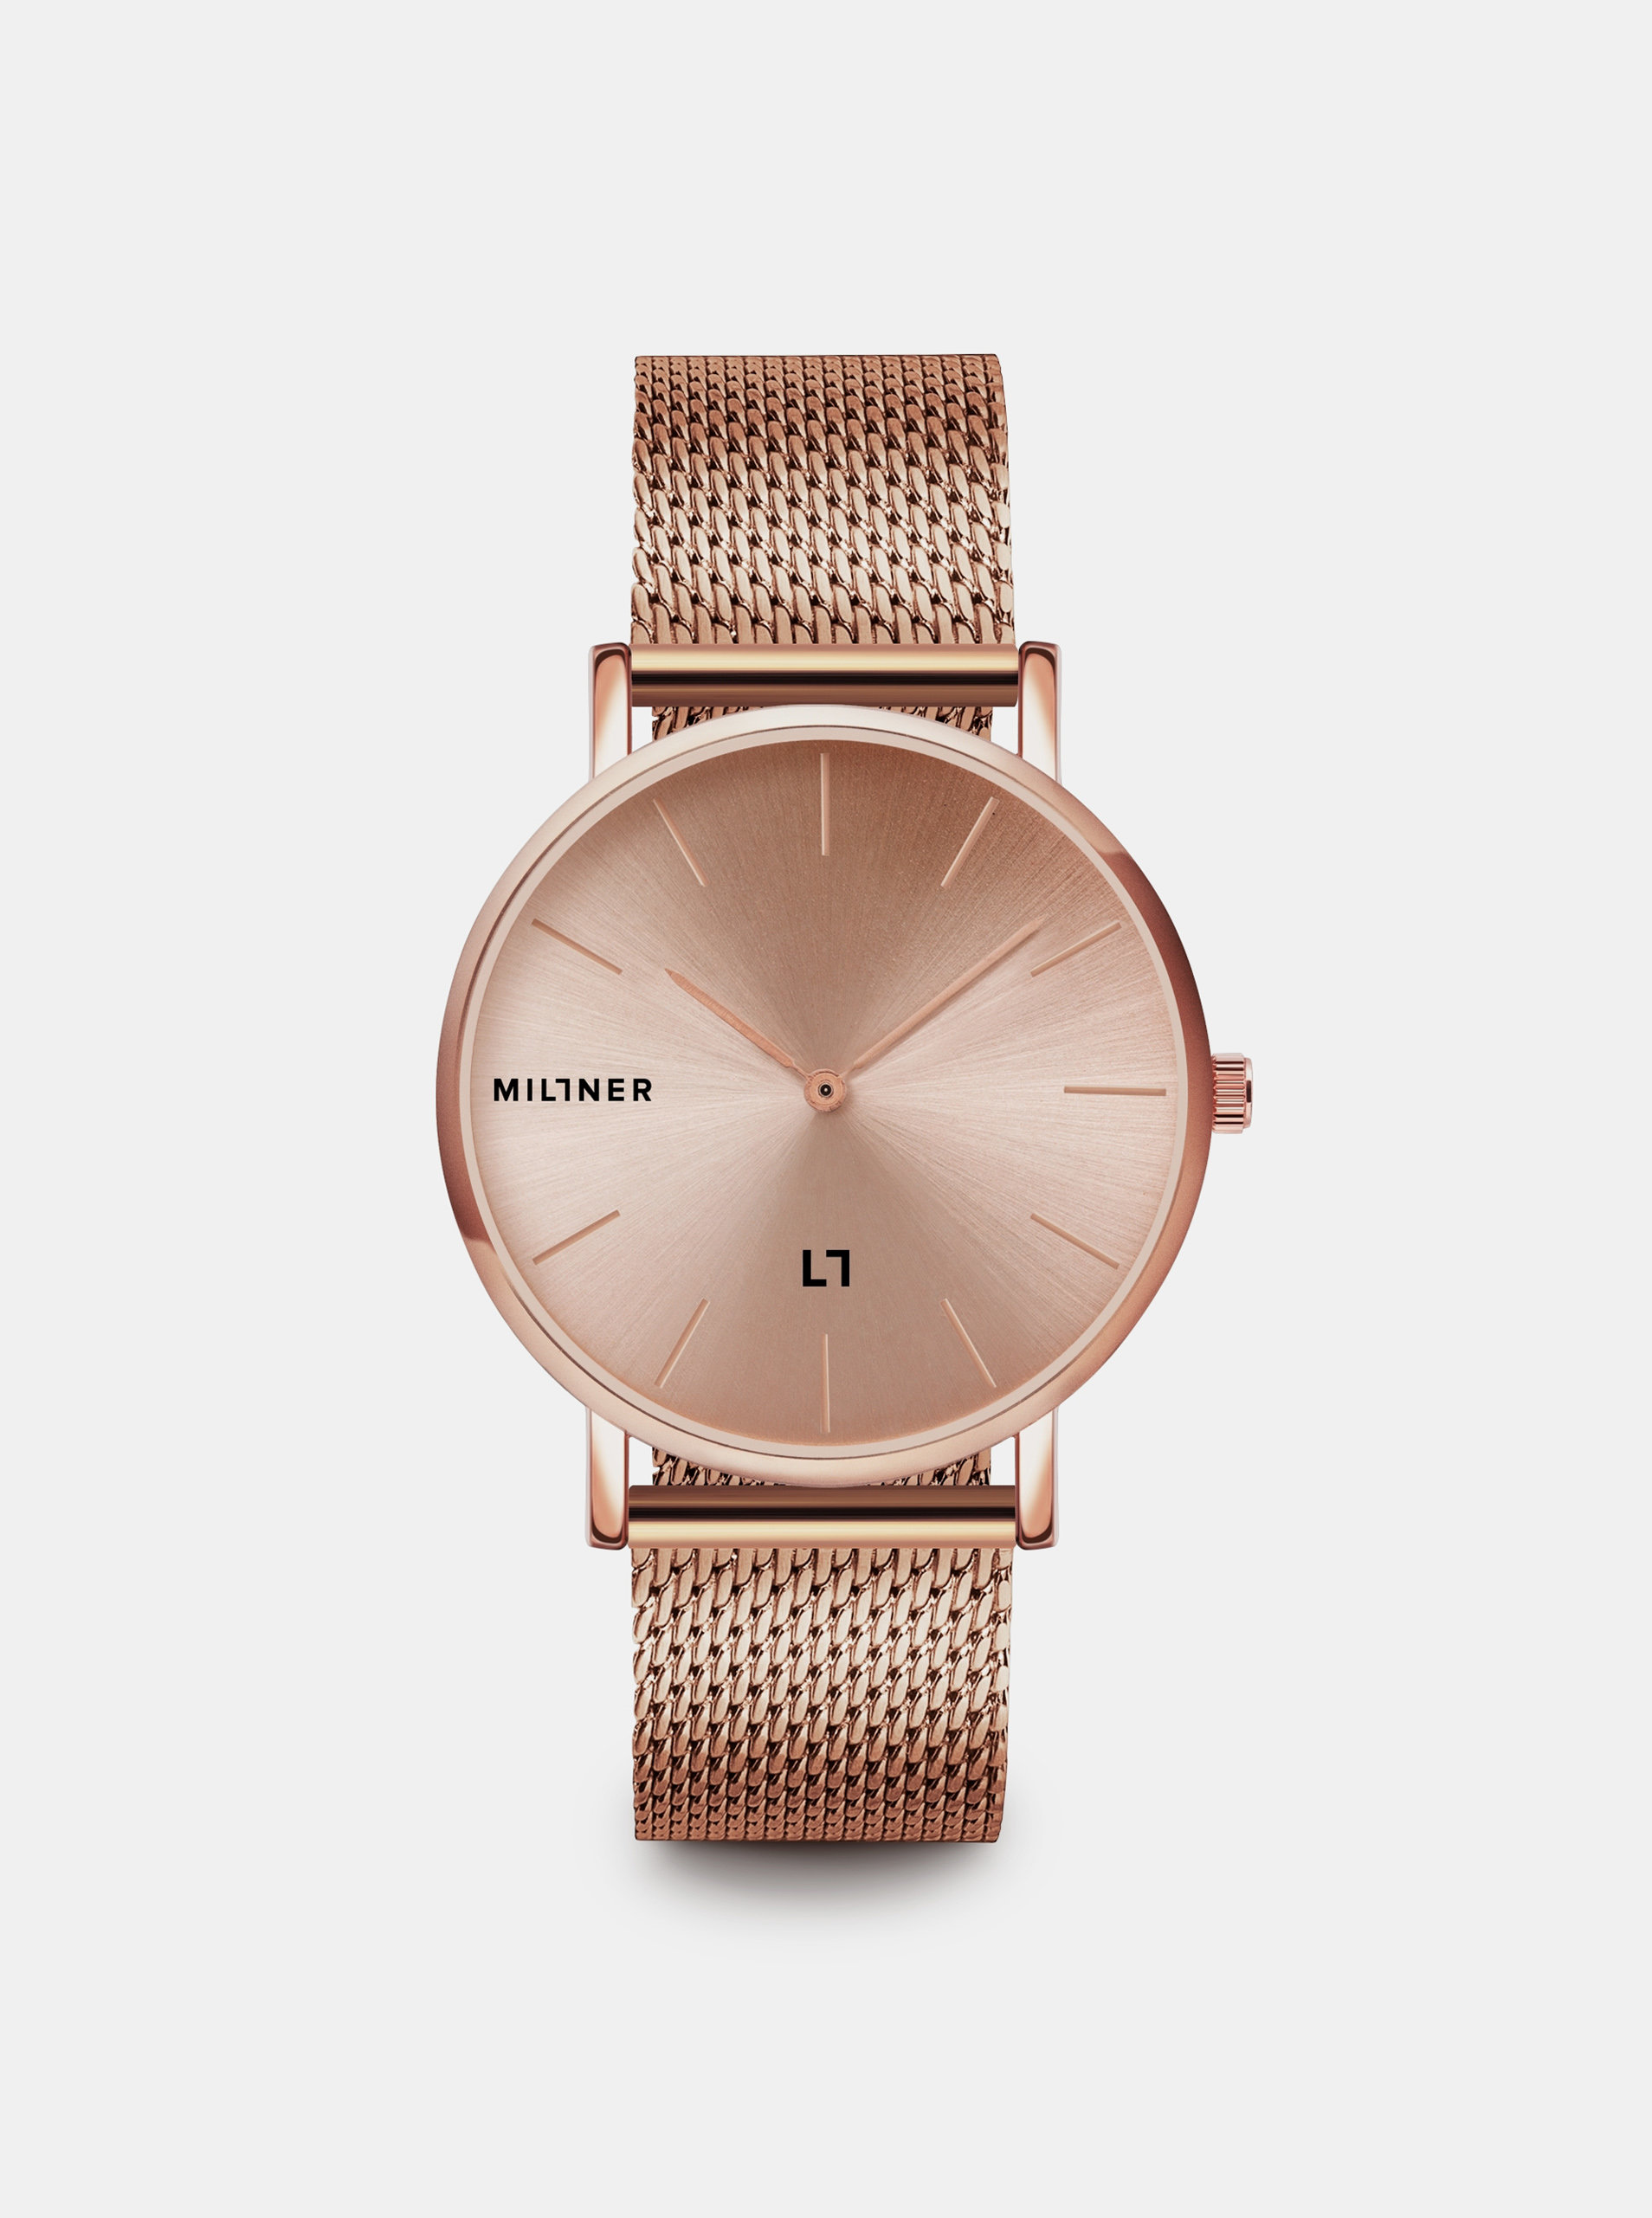 Fotografie Dámské hodinky s nerezovým páskem v růžovozlaté barvě Millner Mayfair